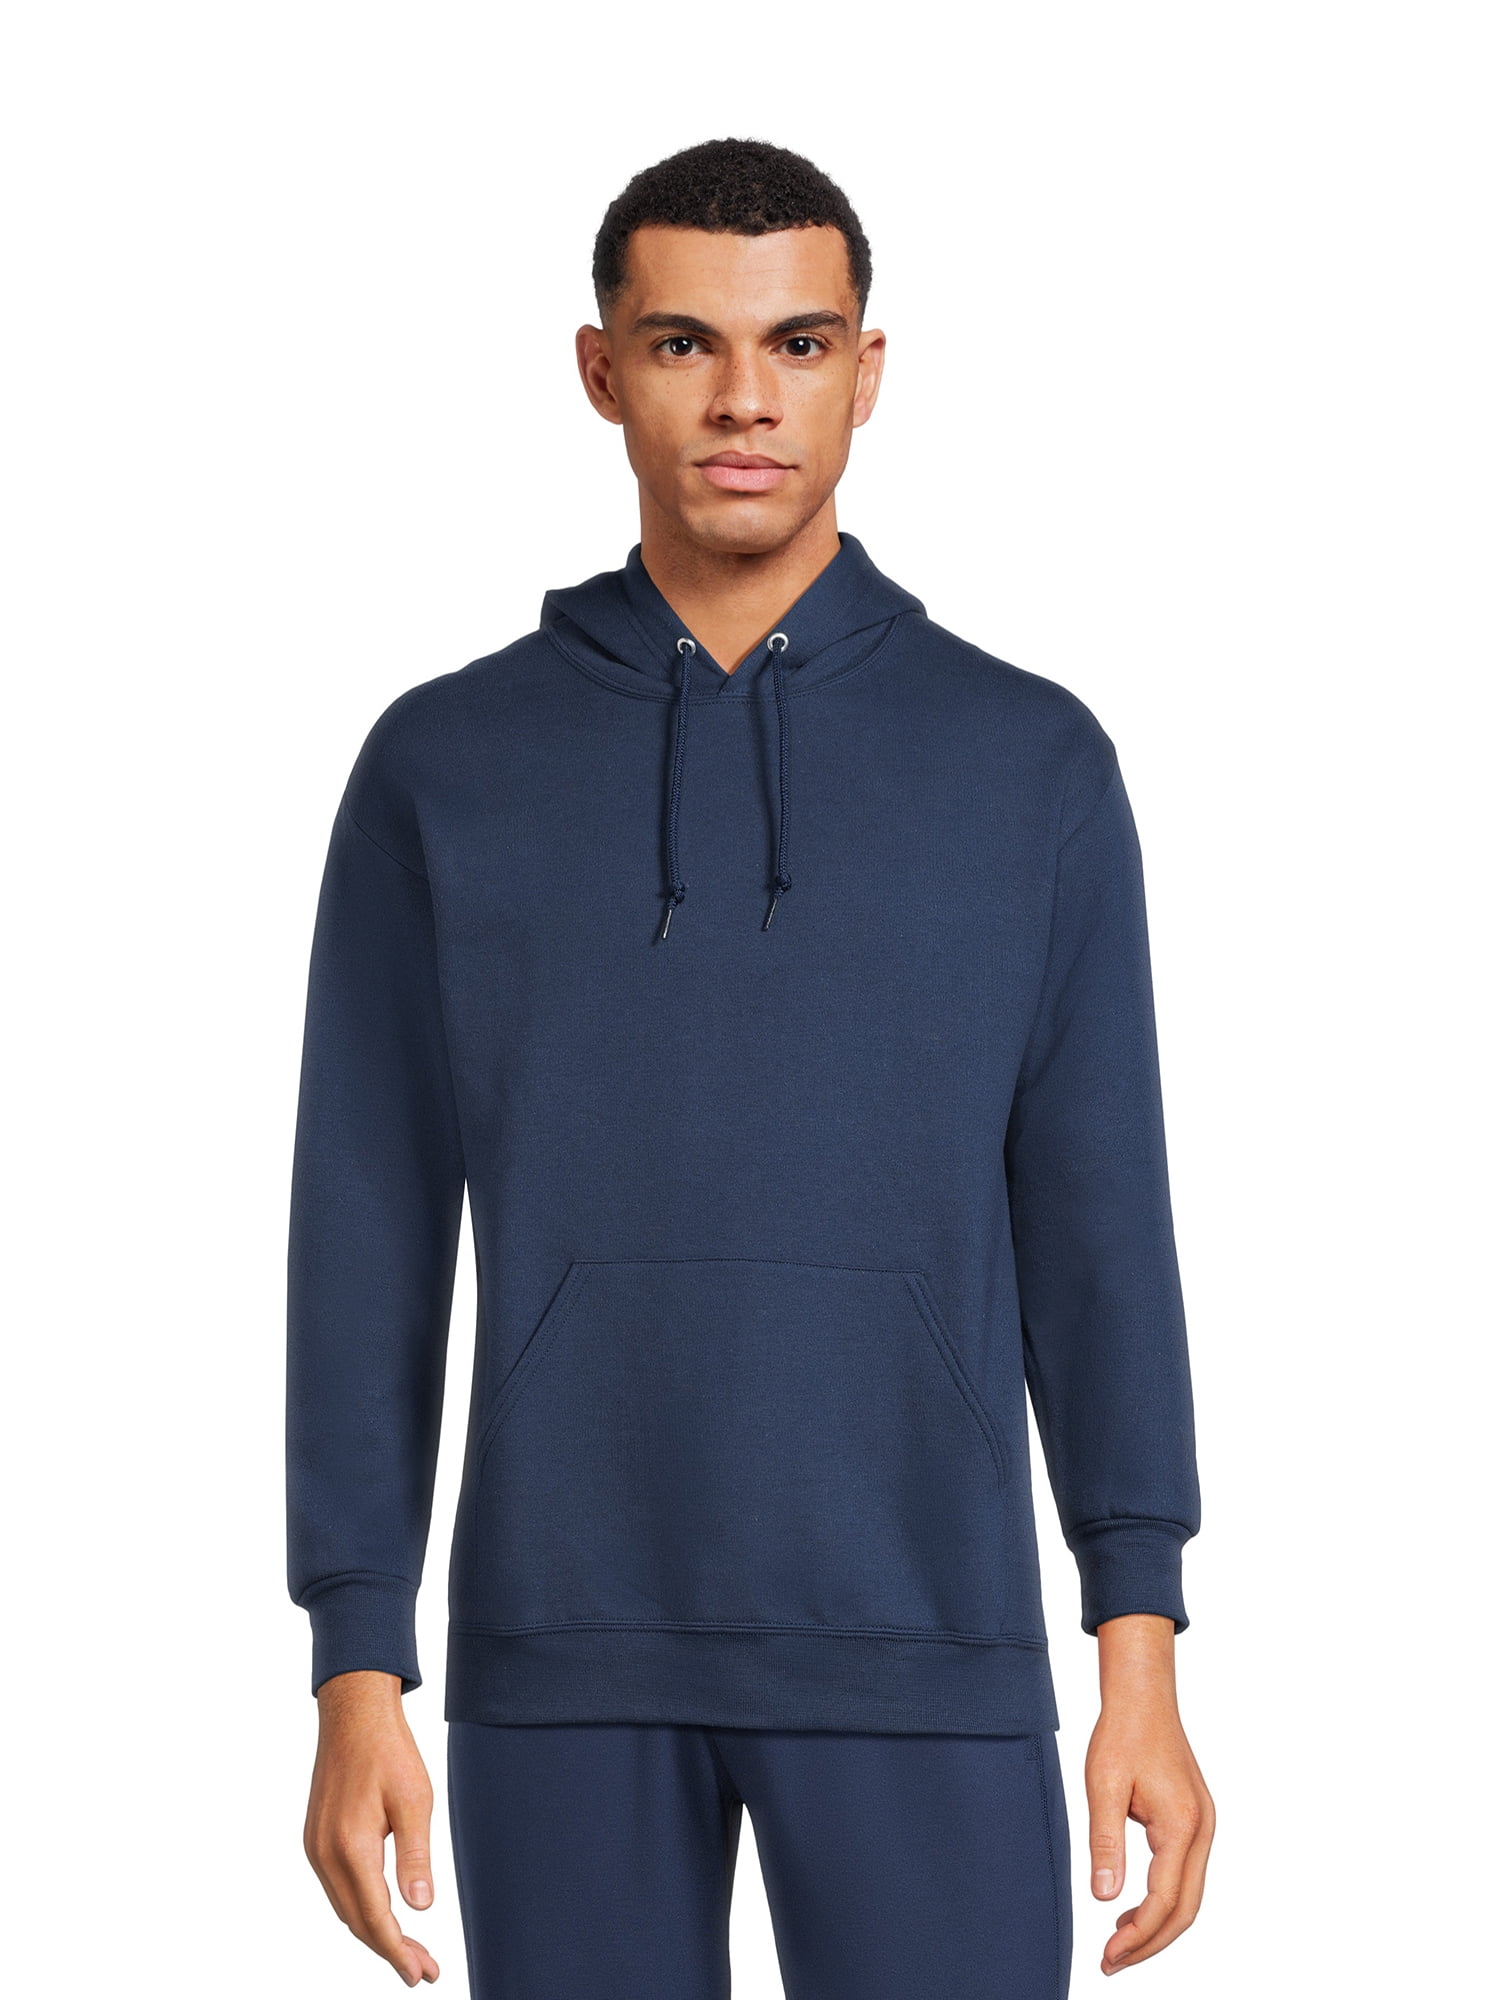 Athletic Works Men's Fleece Pullover Hoodie Sweatshirt - Walmart.com